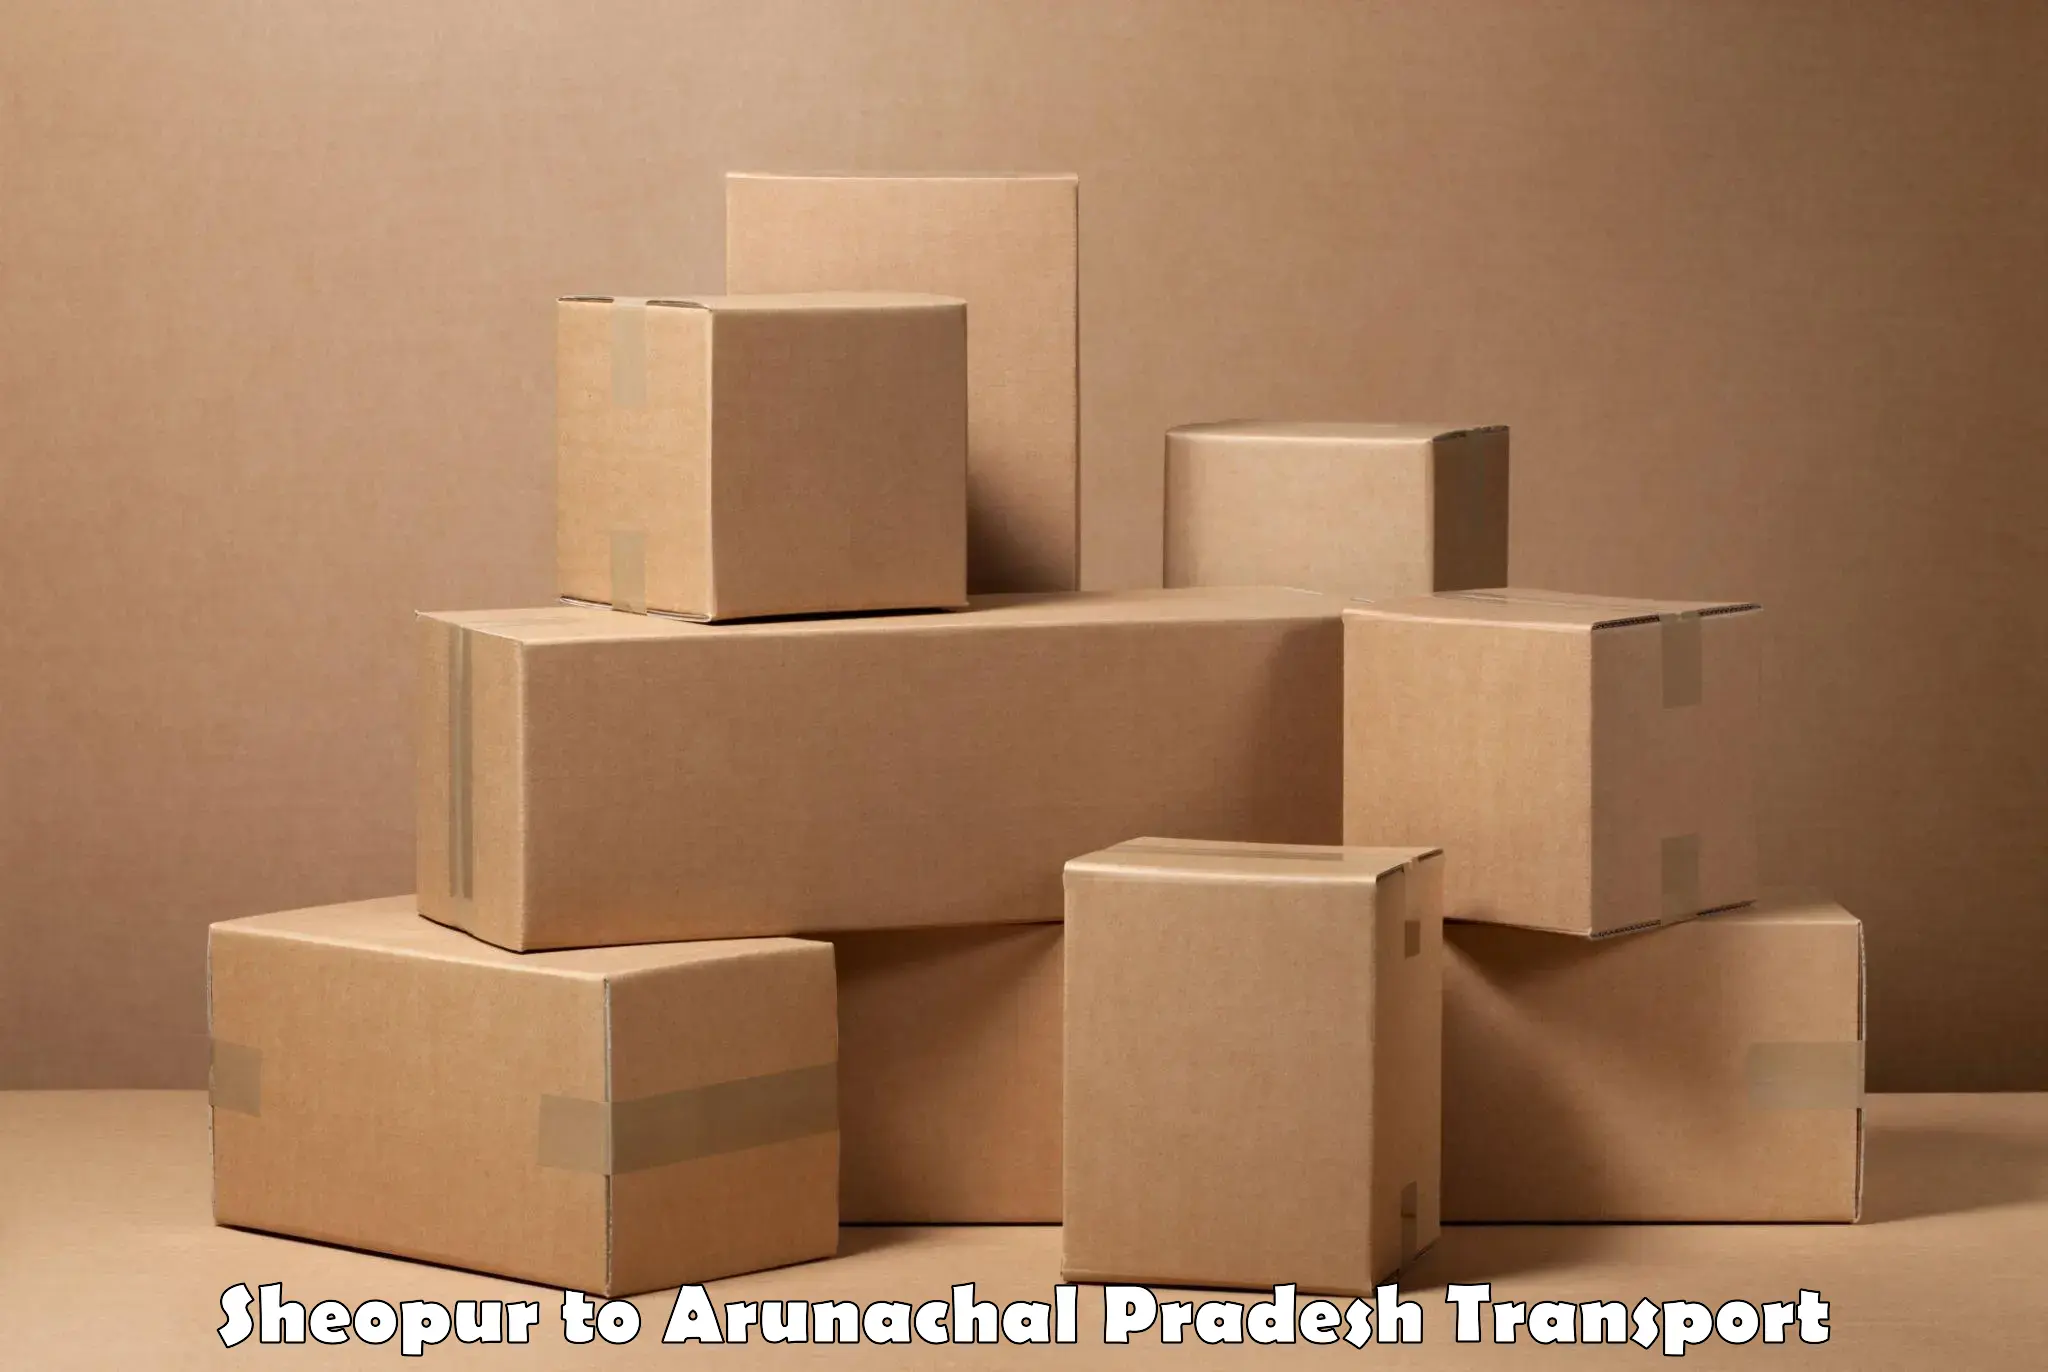 Delivery service Sheopur to Arunachal Pradesh